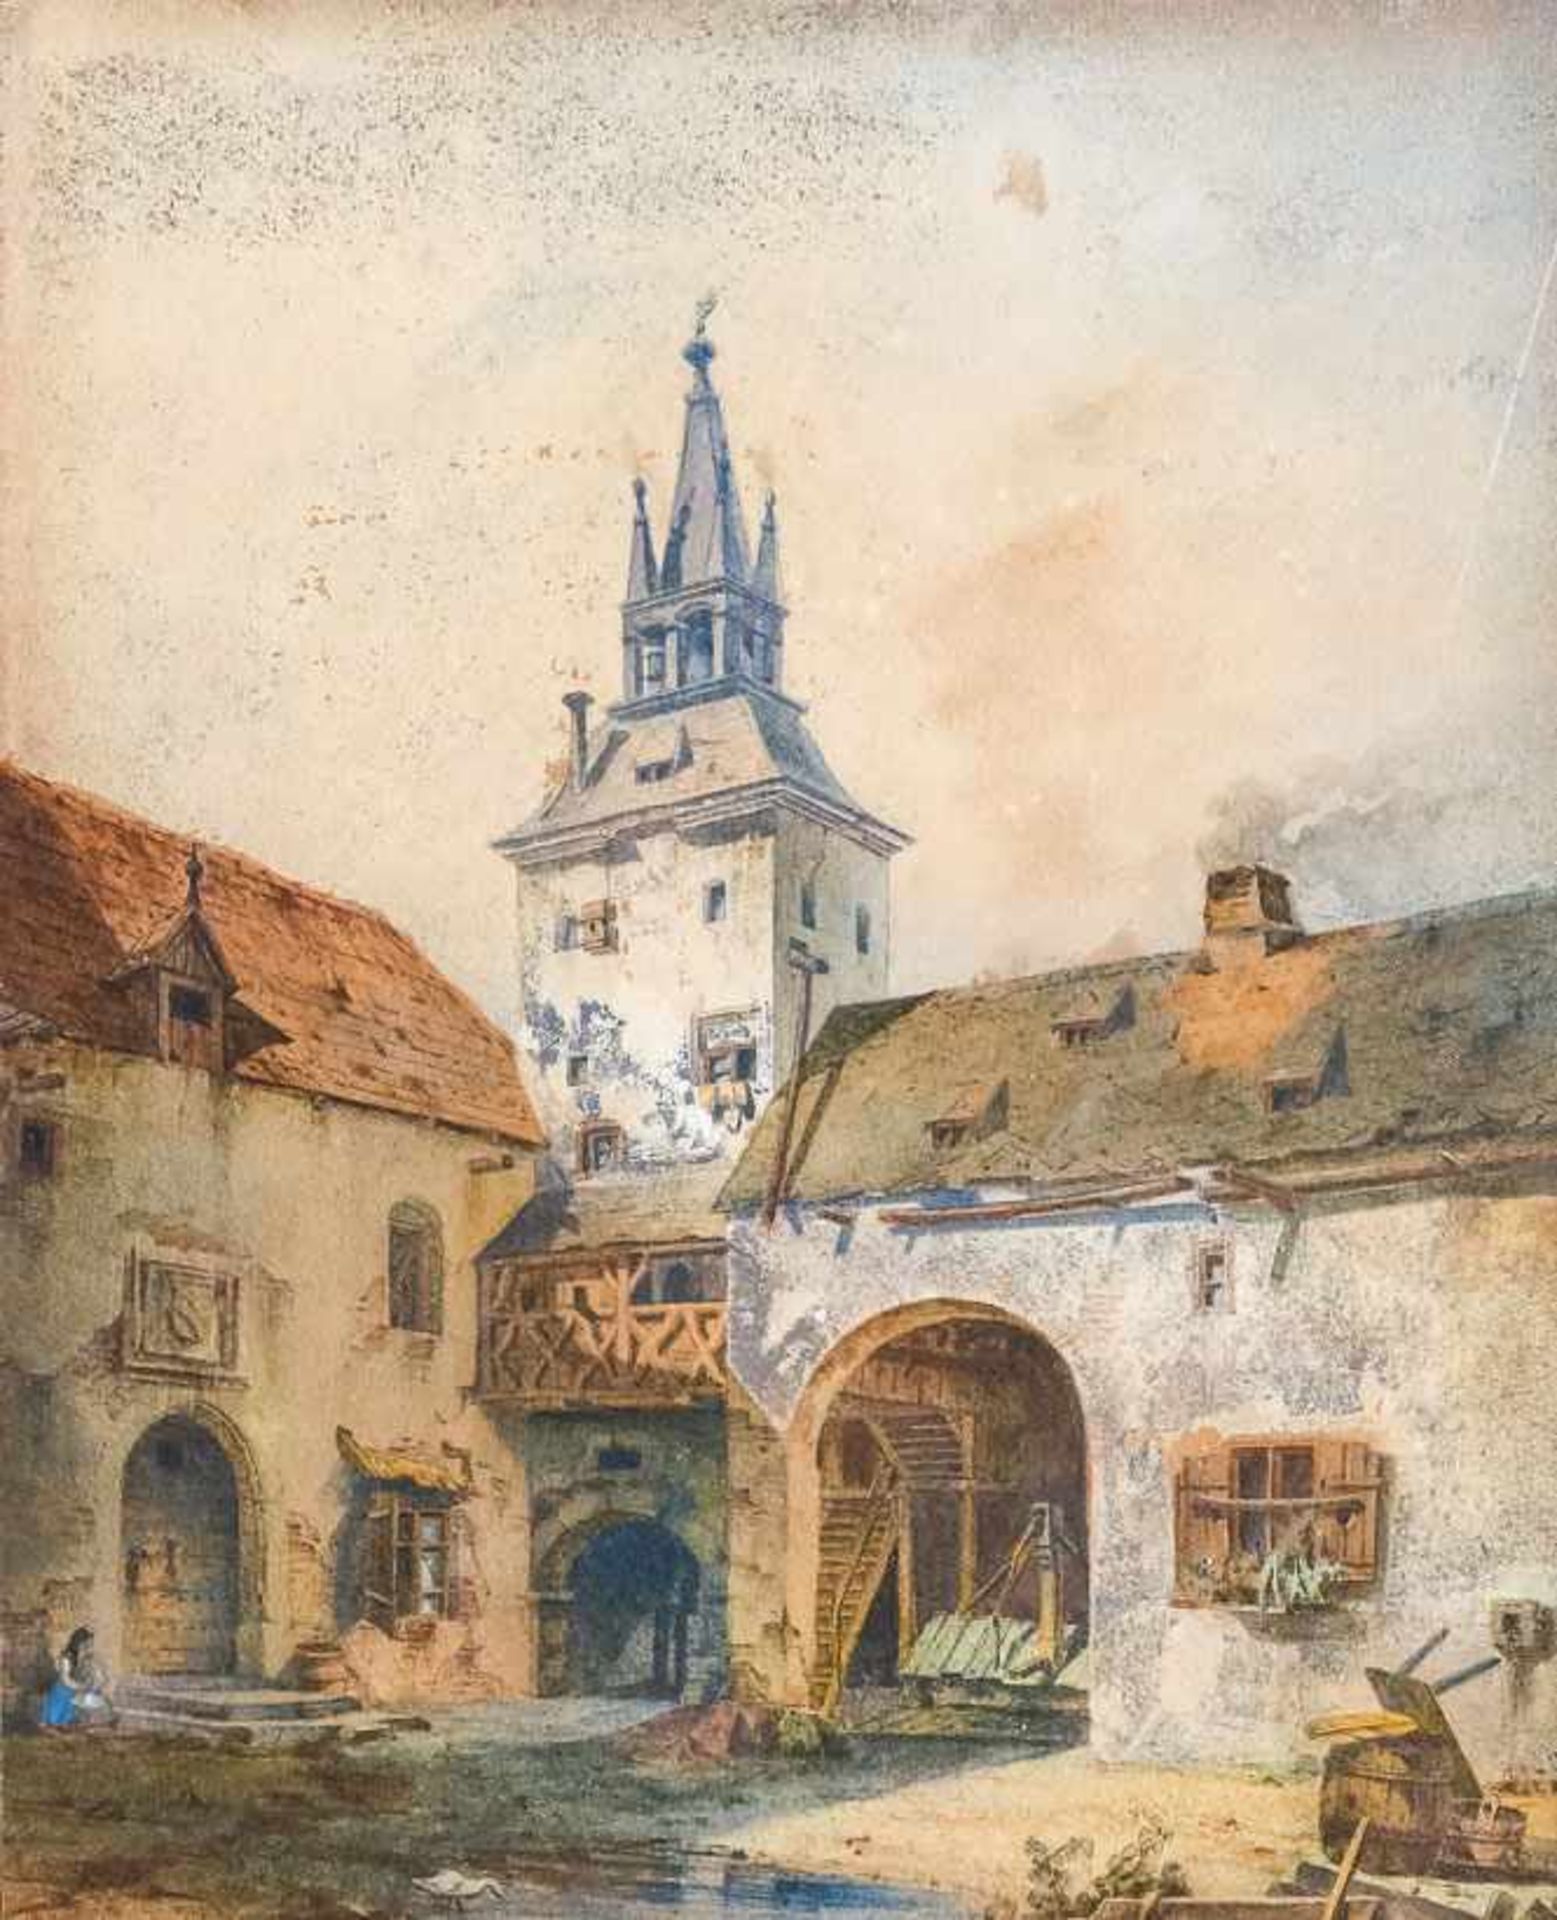 Lohse, Johann (1789-1874) Innenhof mit Turm, Brunnenlaube, Torbogen und Treppbögen sowie kleinem